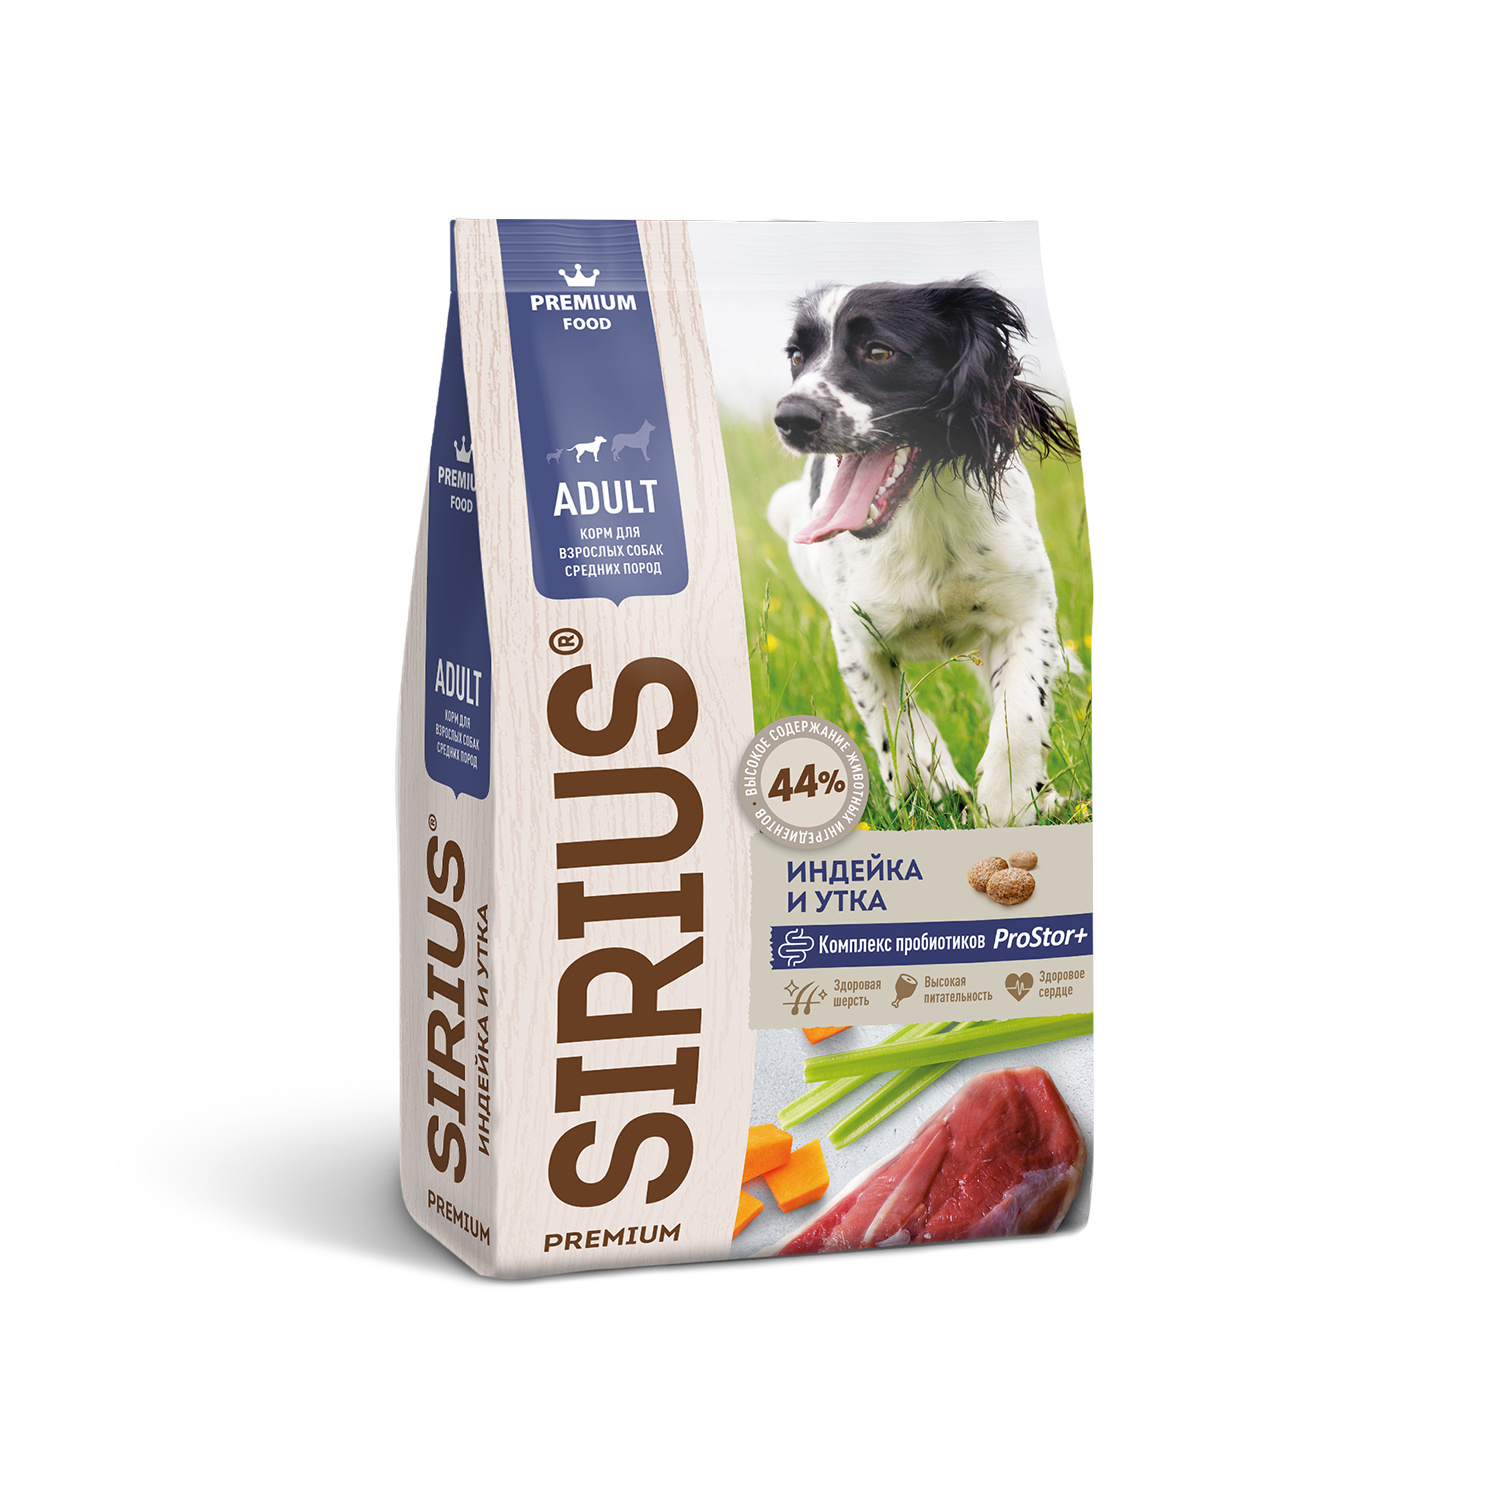 Sirius Sirius сухой корм для собак средних пород, индейка и утка (12 кг) sirius sirius сухой корм для собак средних пород индейка и утка 12 кг